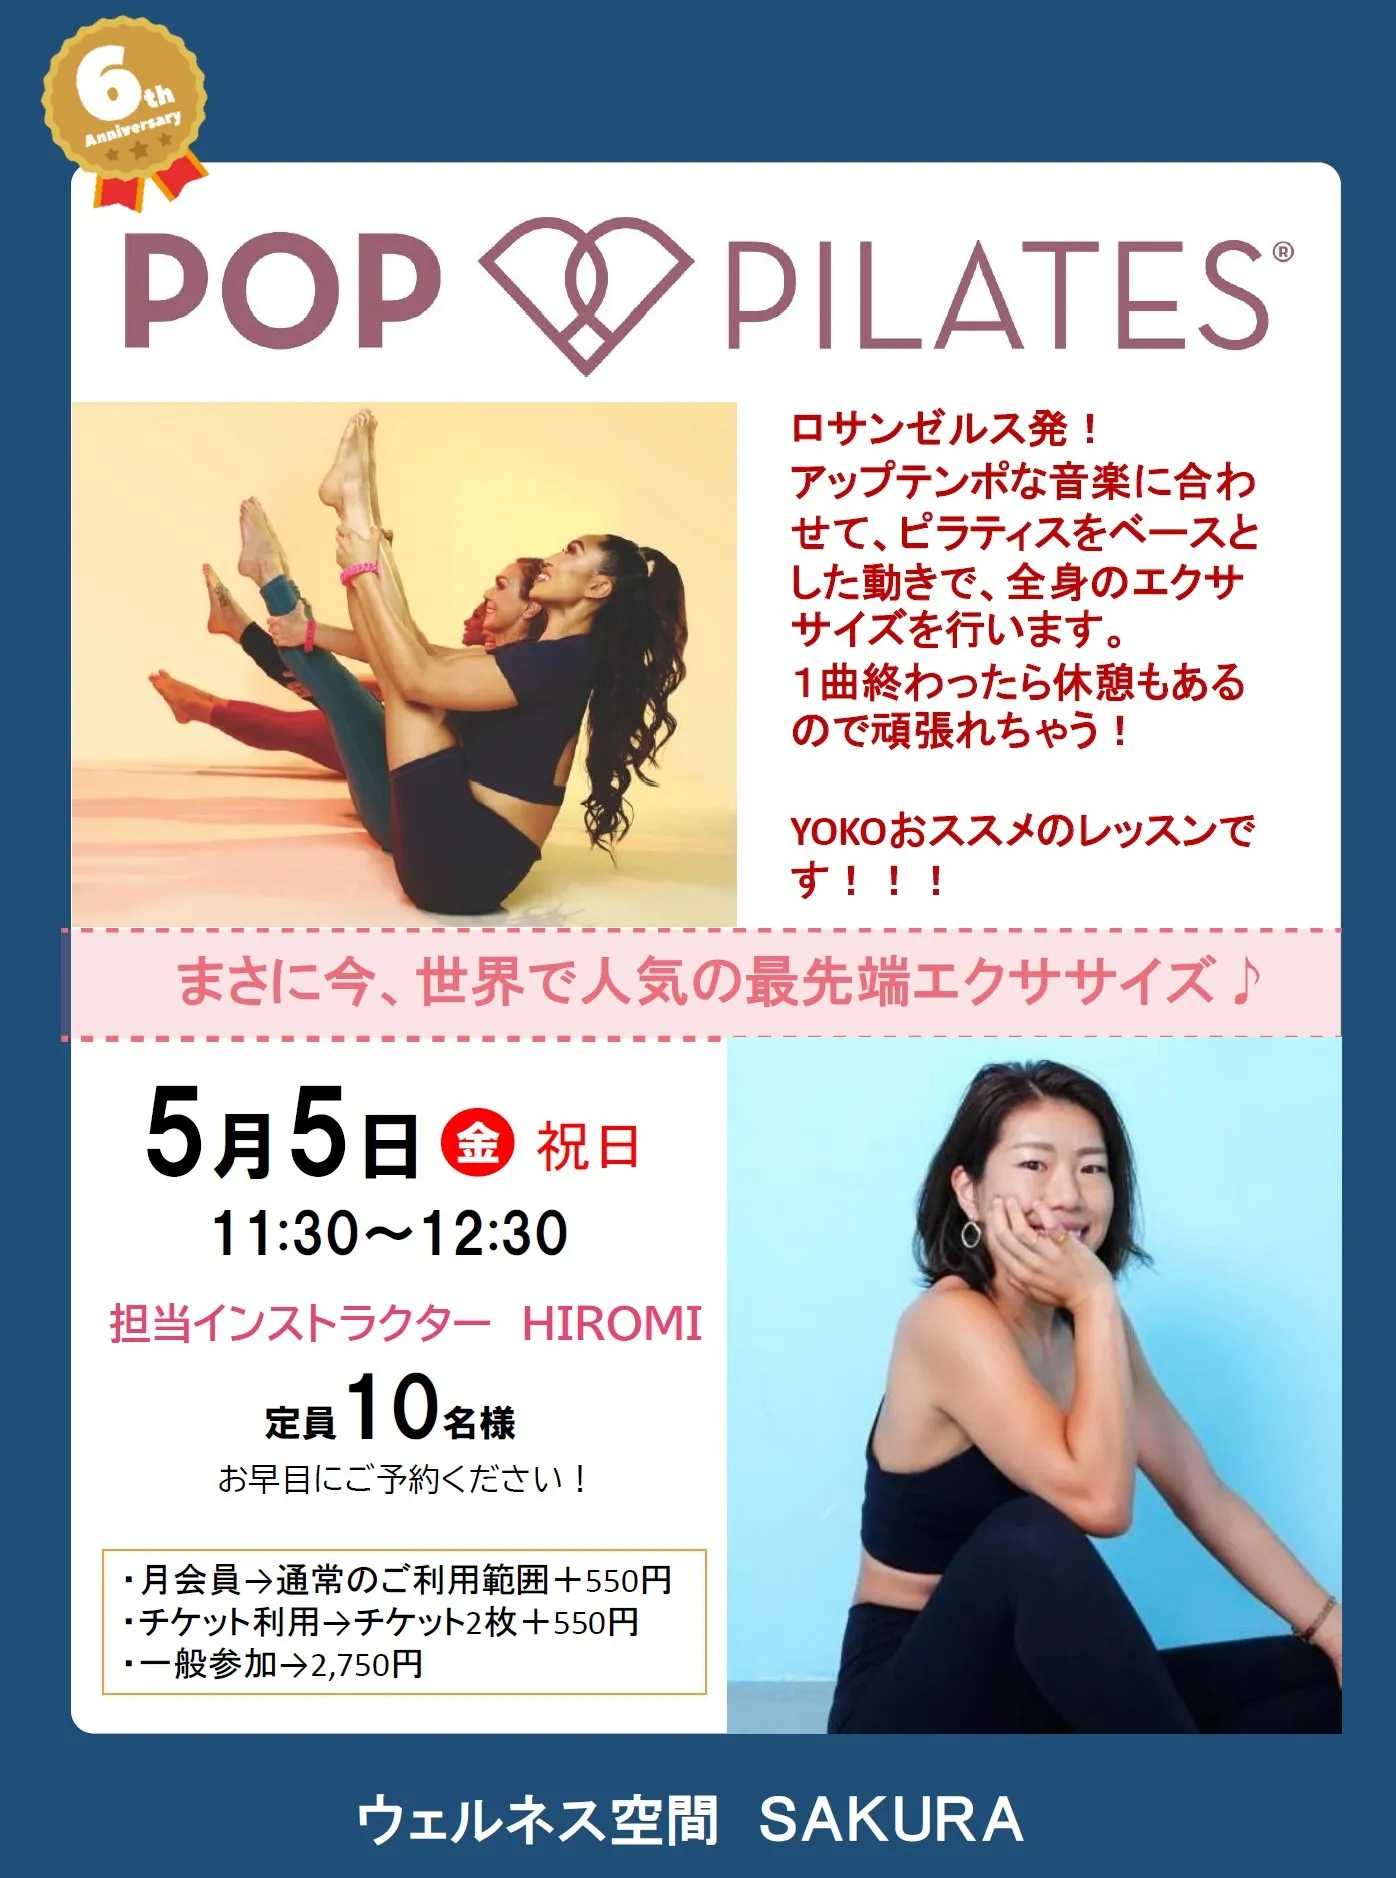 【6周年イベント】POP PILATES